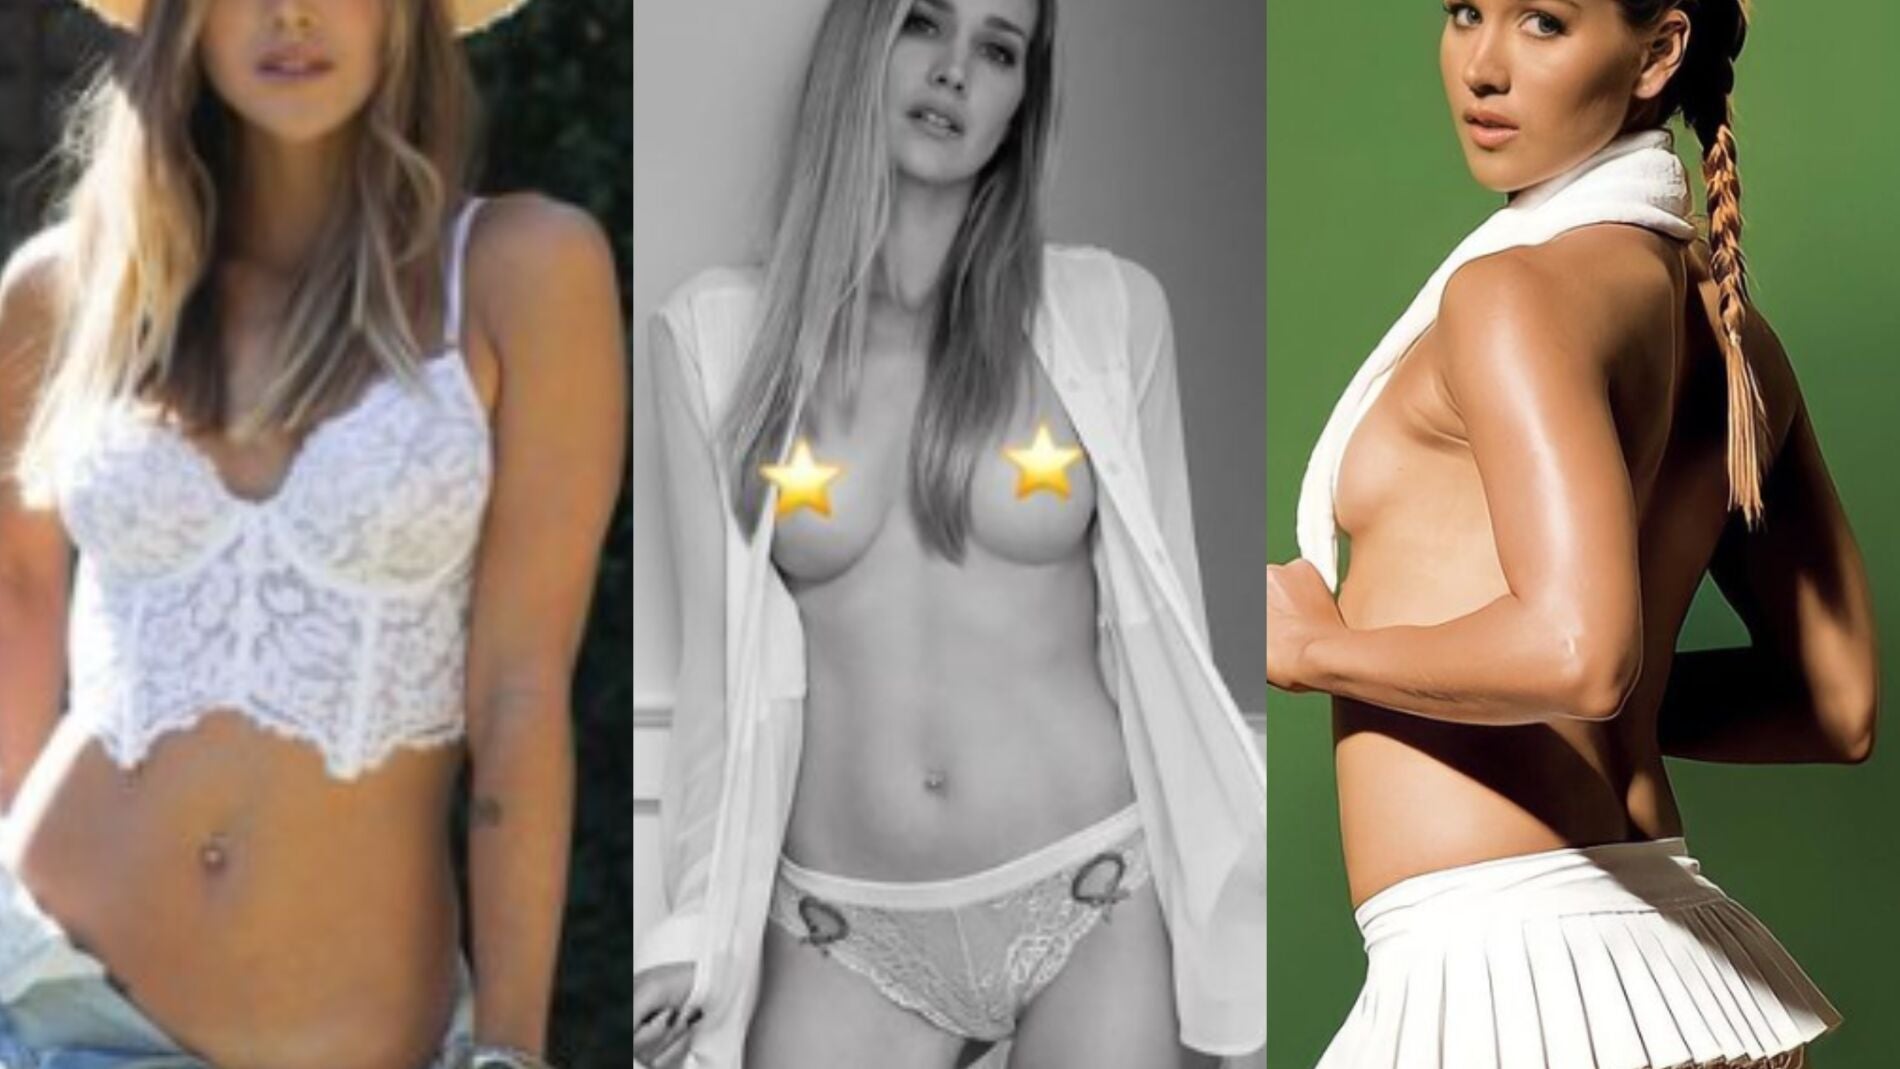 Ashley Harkleroad de estrella de tenis a hacer vídeos porno en Onlyfans foto